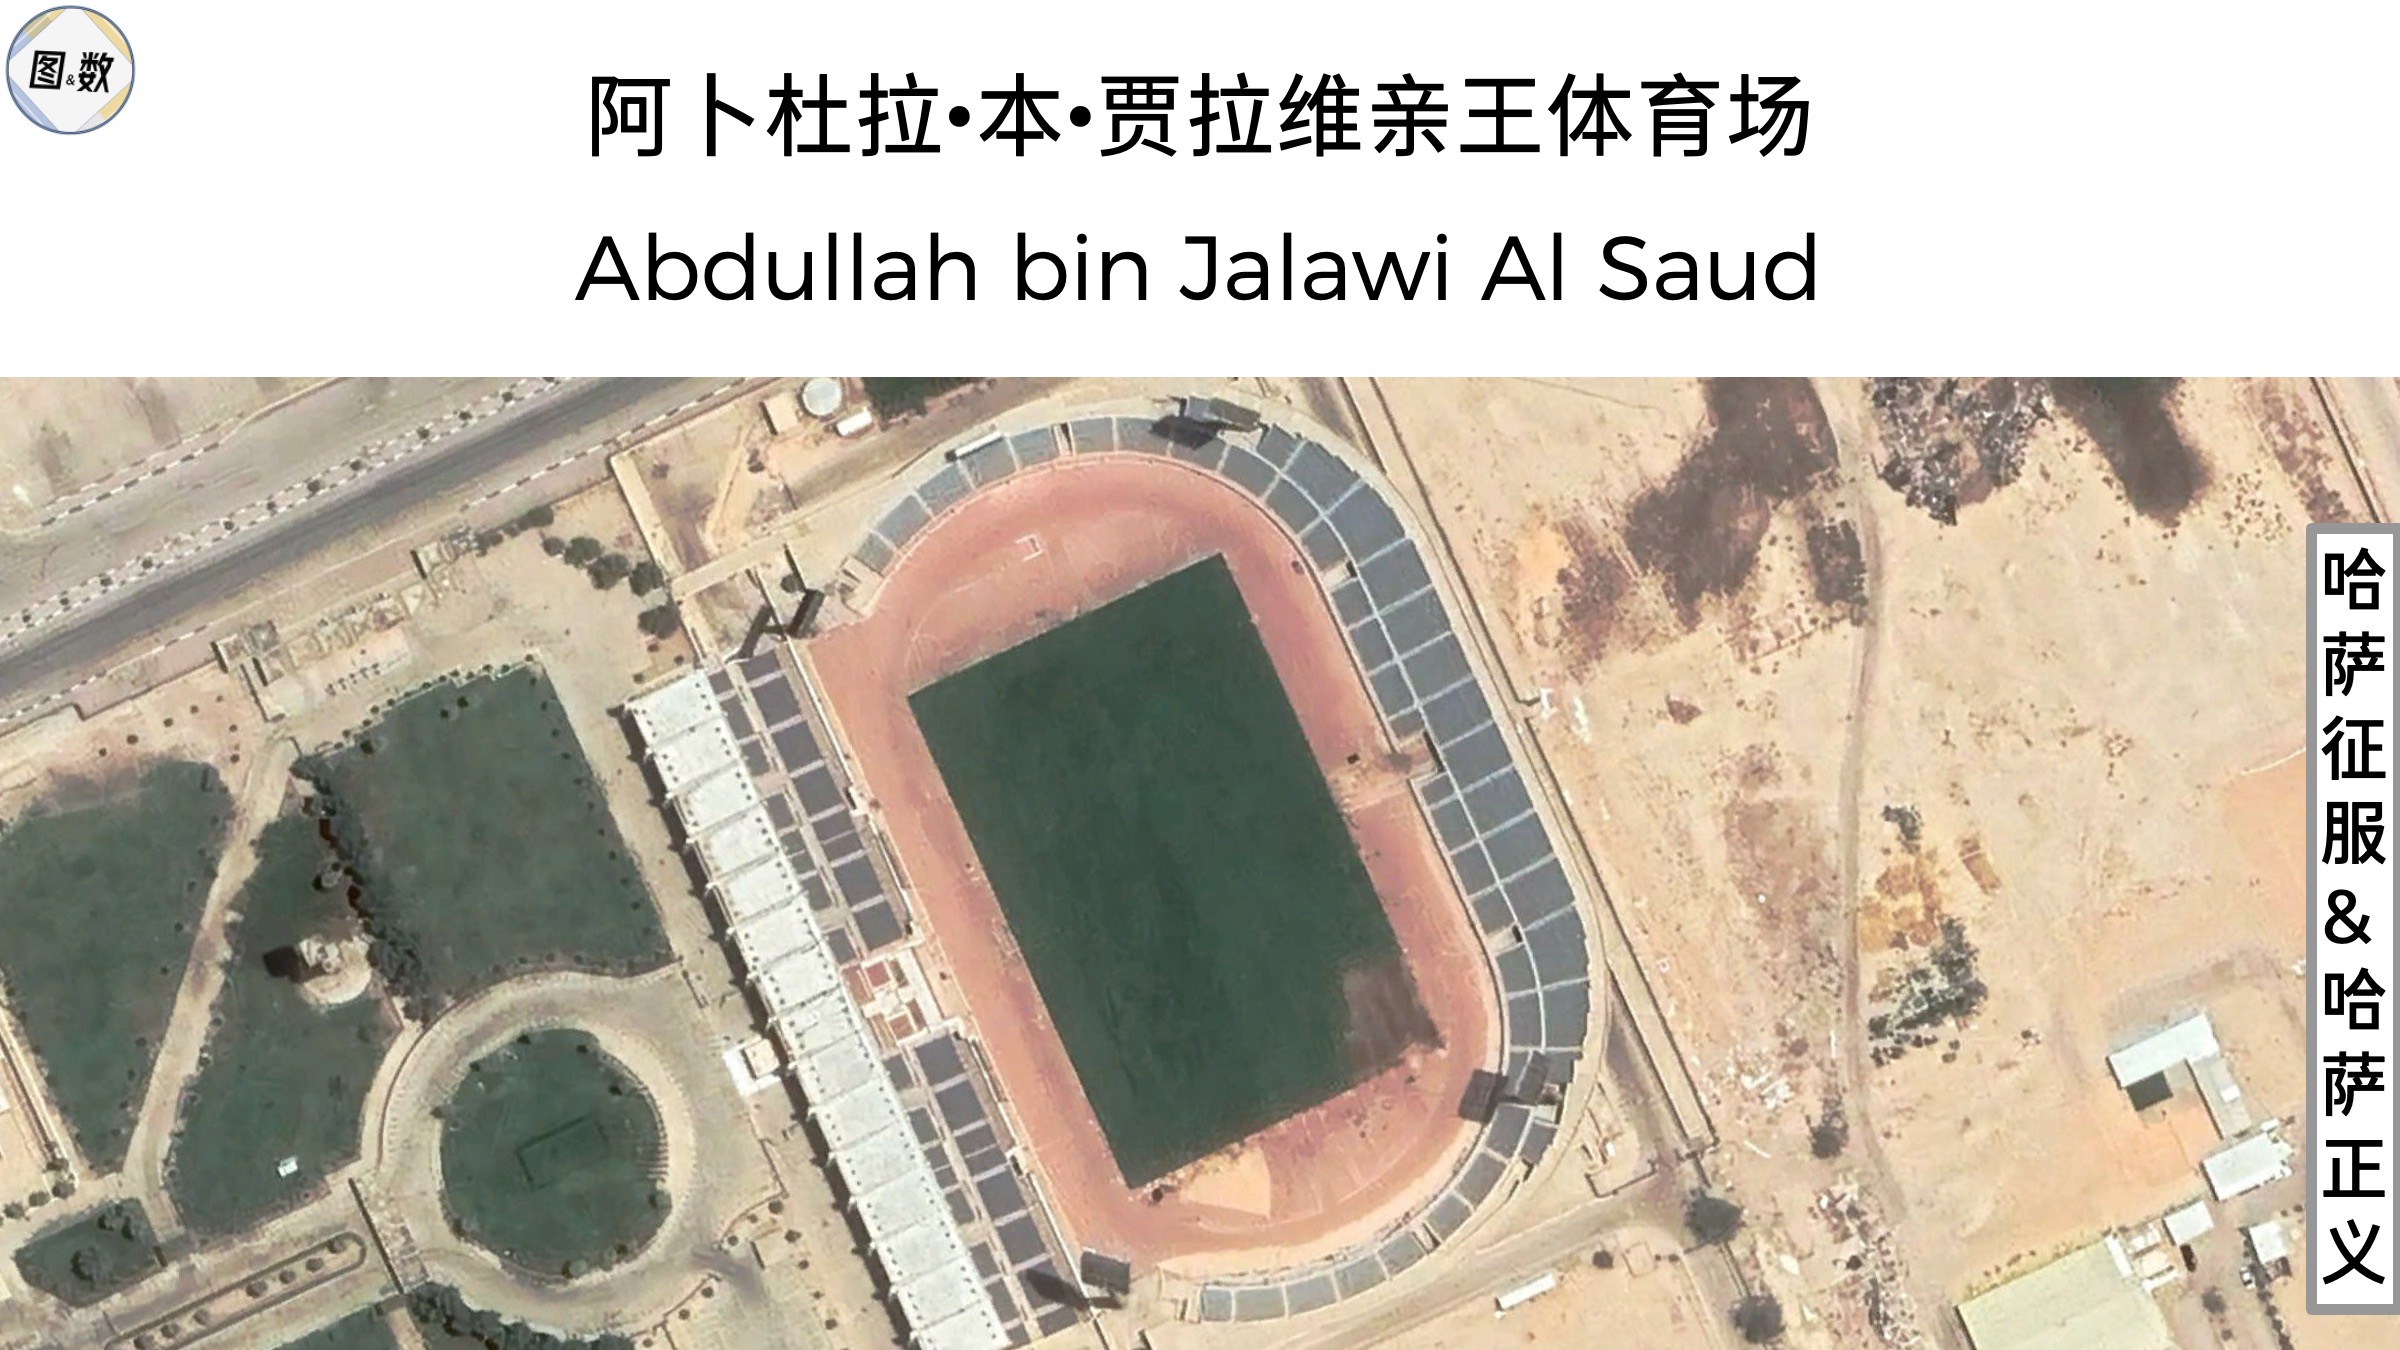 沙特足球联赛多少球队_沙特联赛足球球队排名_沙特俱乐部球队